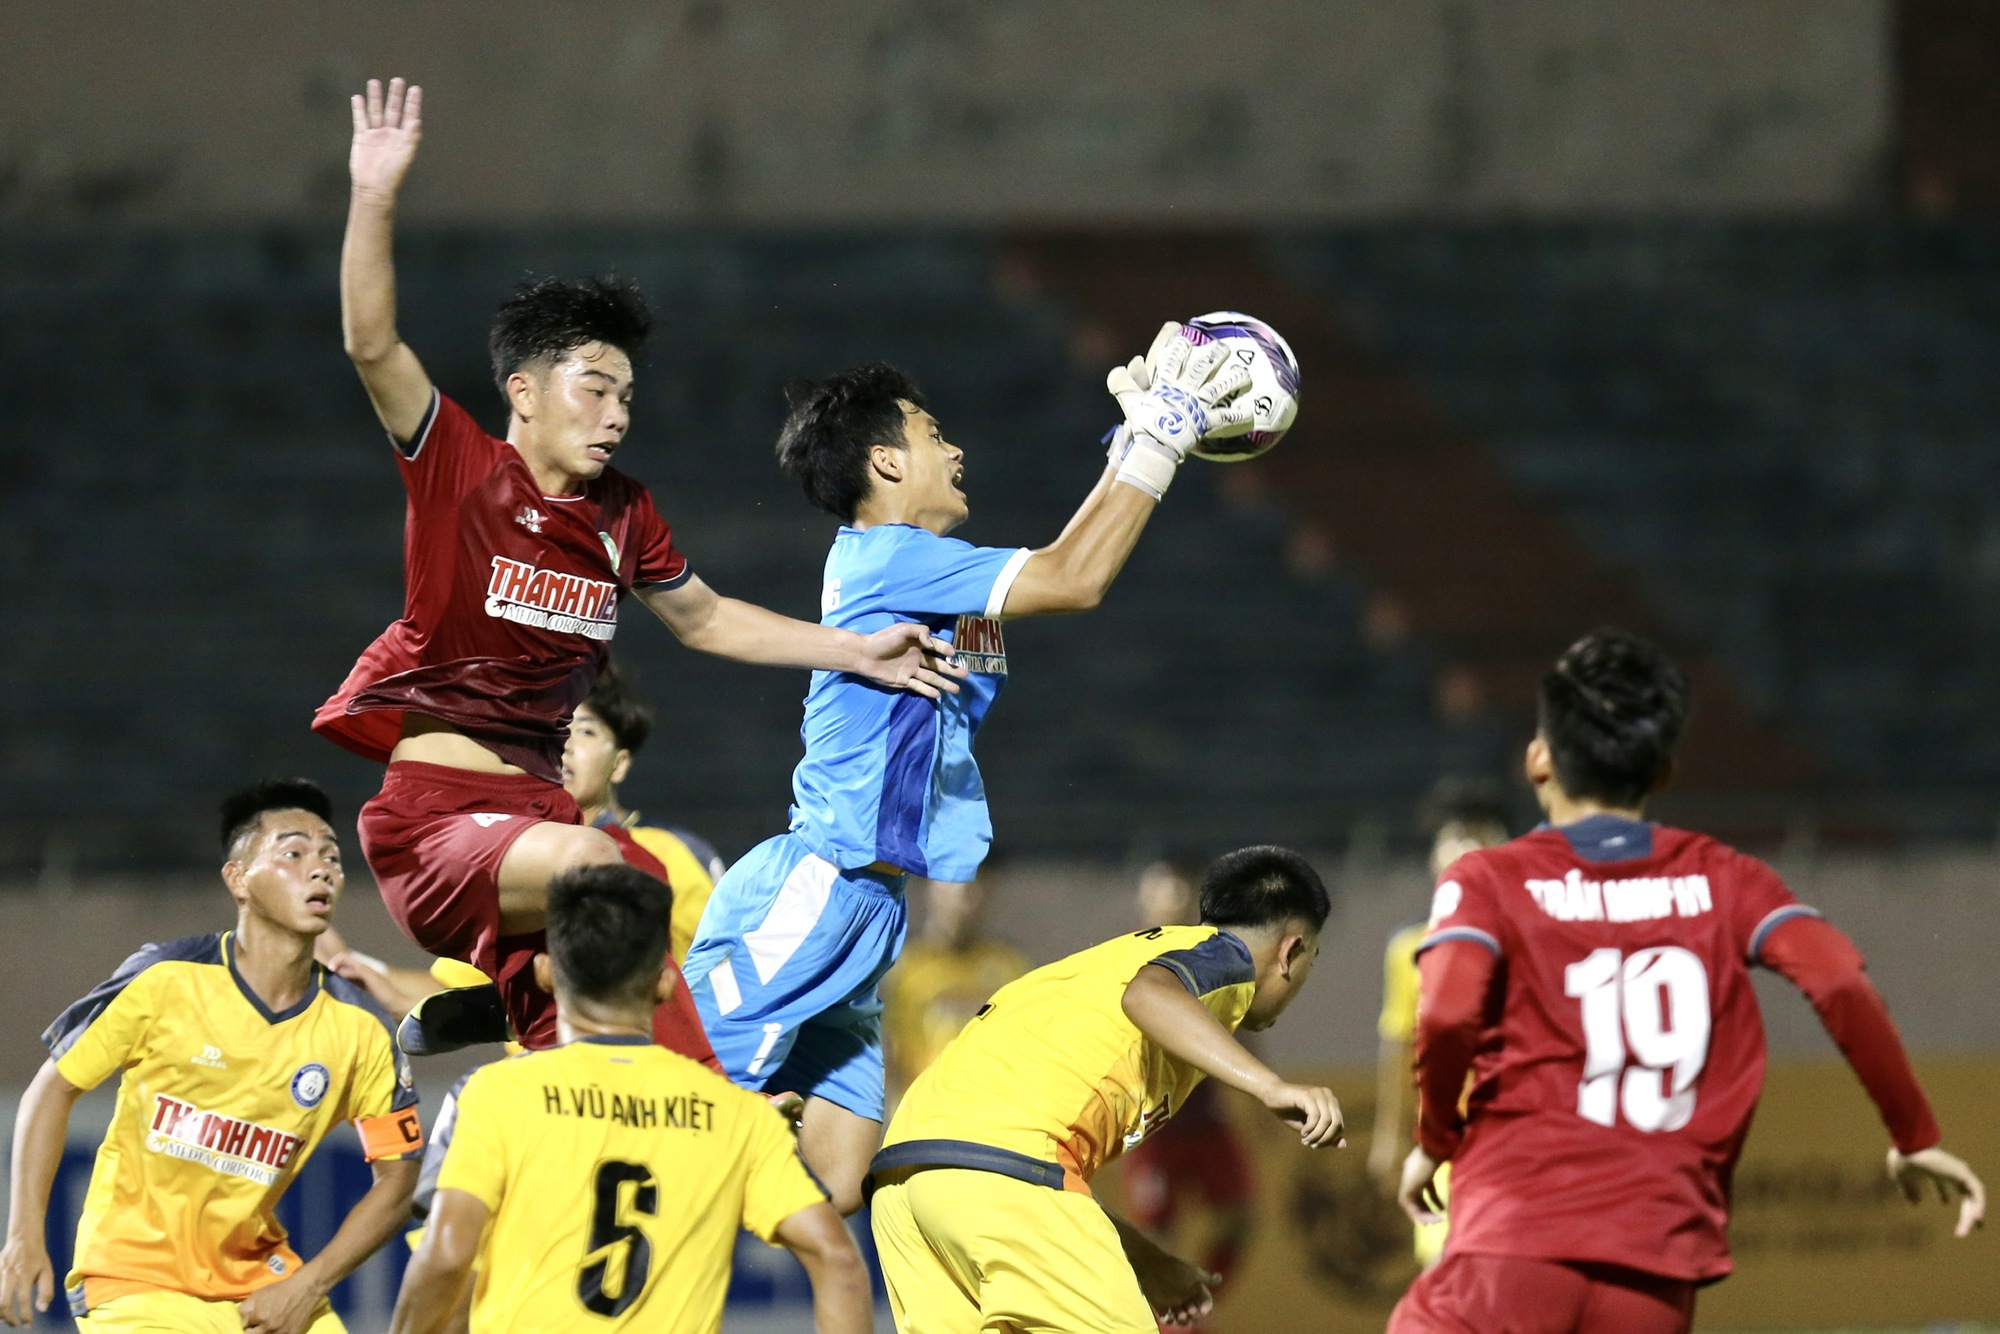 VCK U.19 quốc gia: U.19 Khánh Hòa đánh bại chủ nhà Tây Ninh - Ảnh 3.